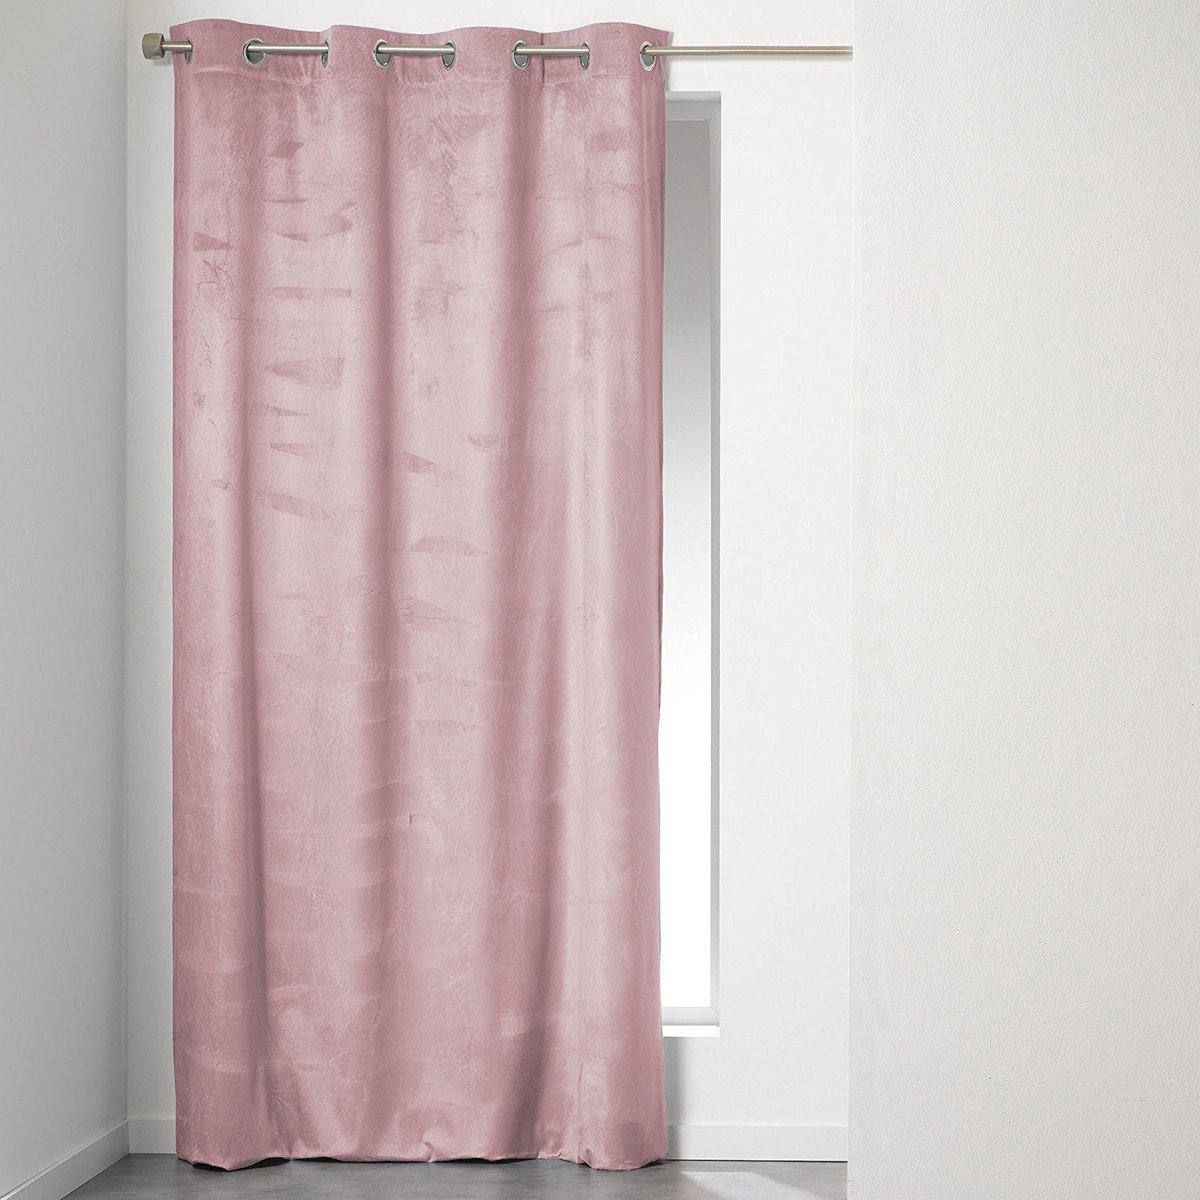 universiteitsstudent hypotheek bod Sleepp - Velvet gordijn - Velours gordijn met ringen - 140 x 240 cm - roze  | bol.com